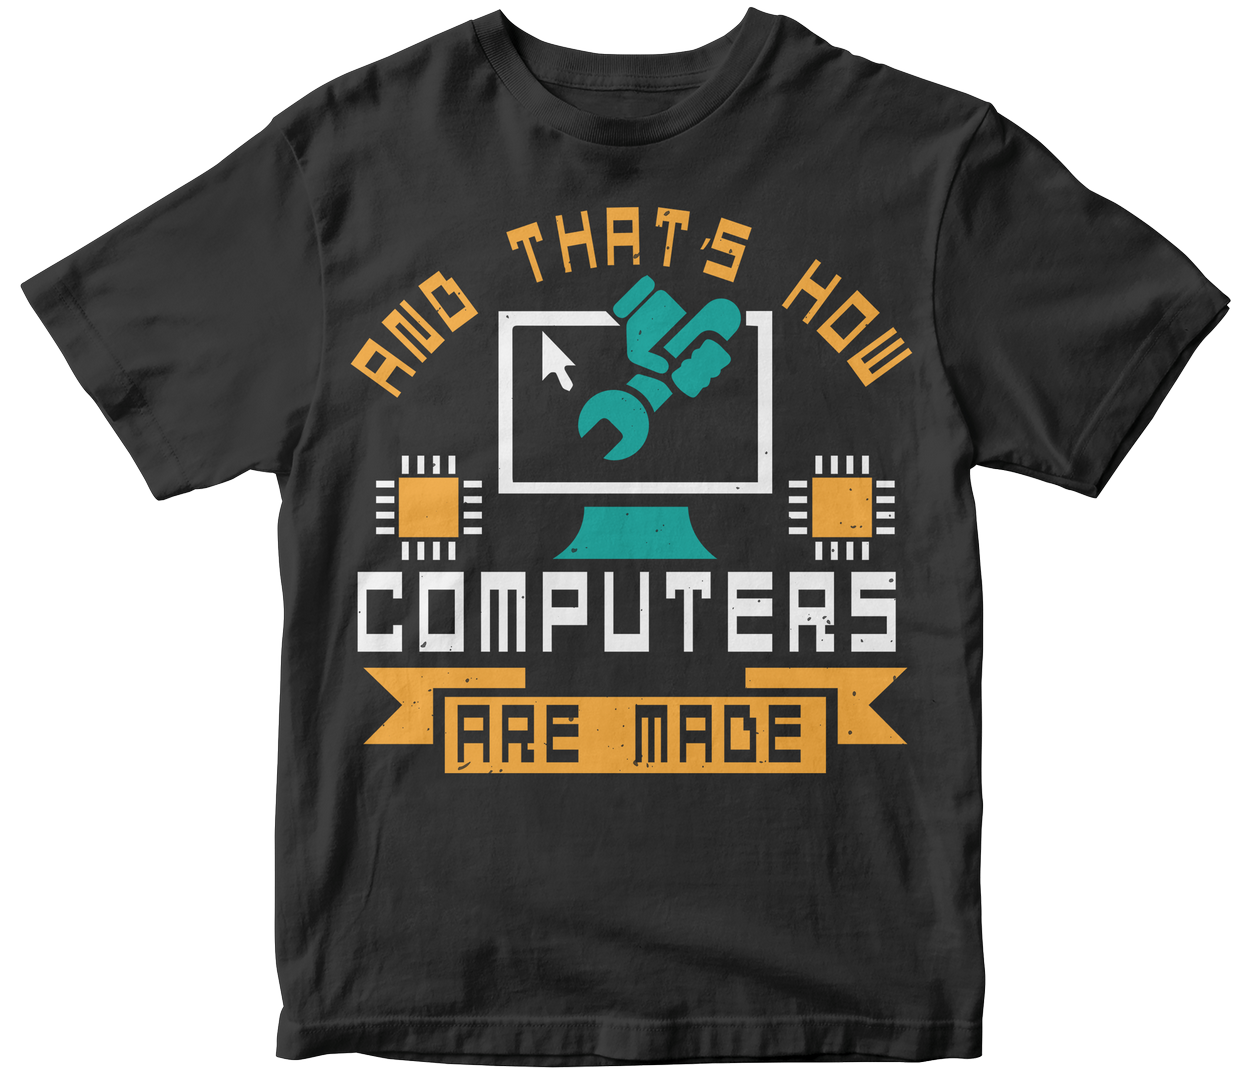 50-customizable-computer-t-shirt-design-bundle